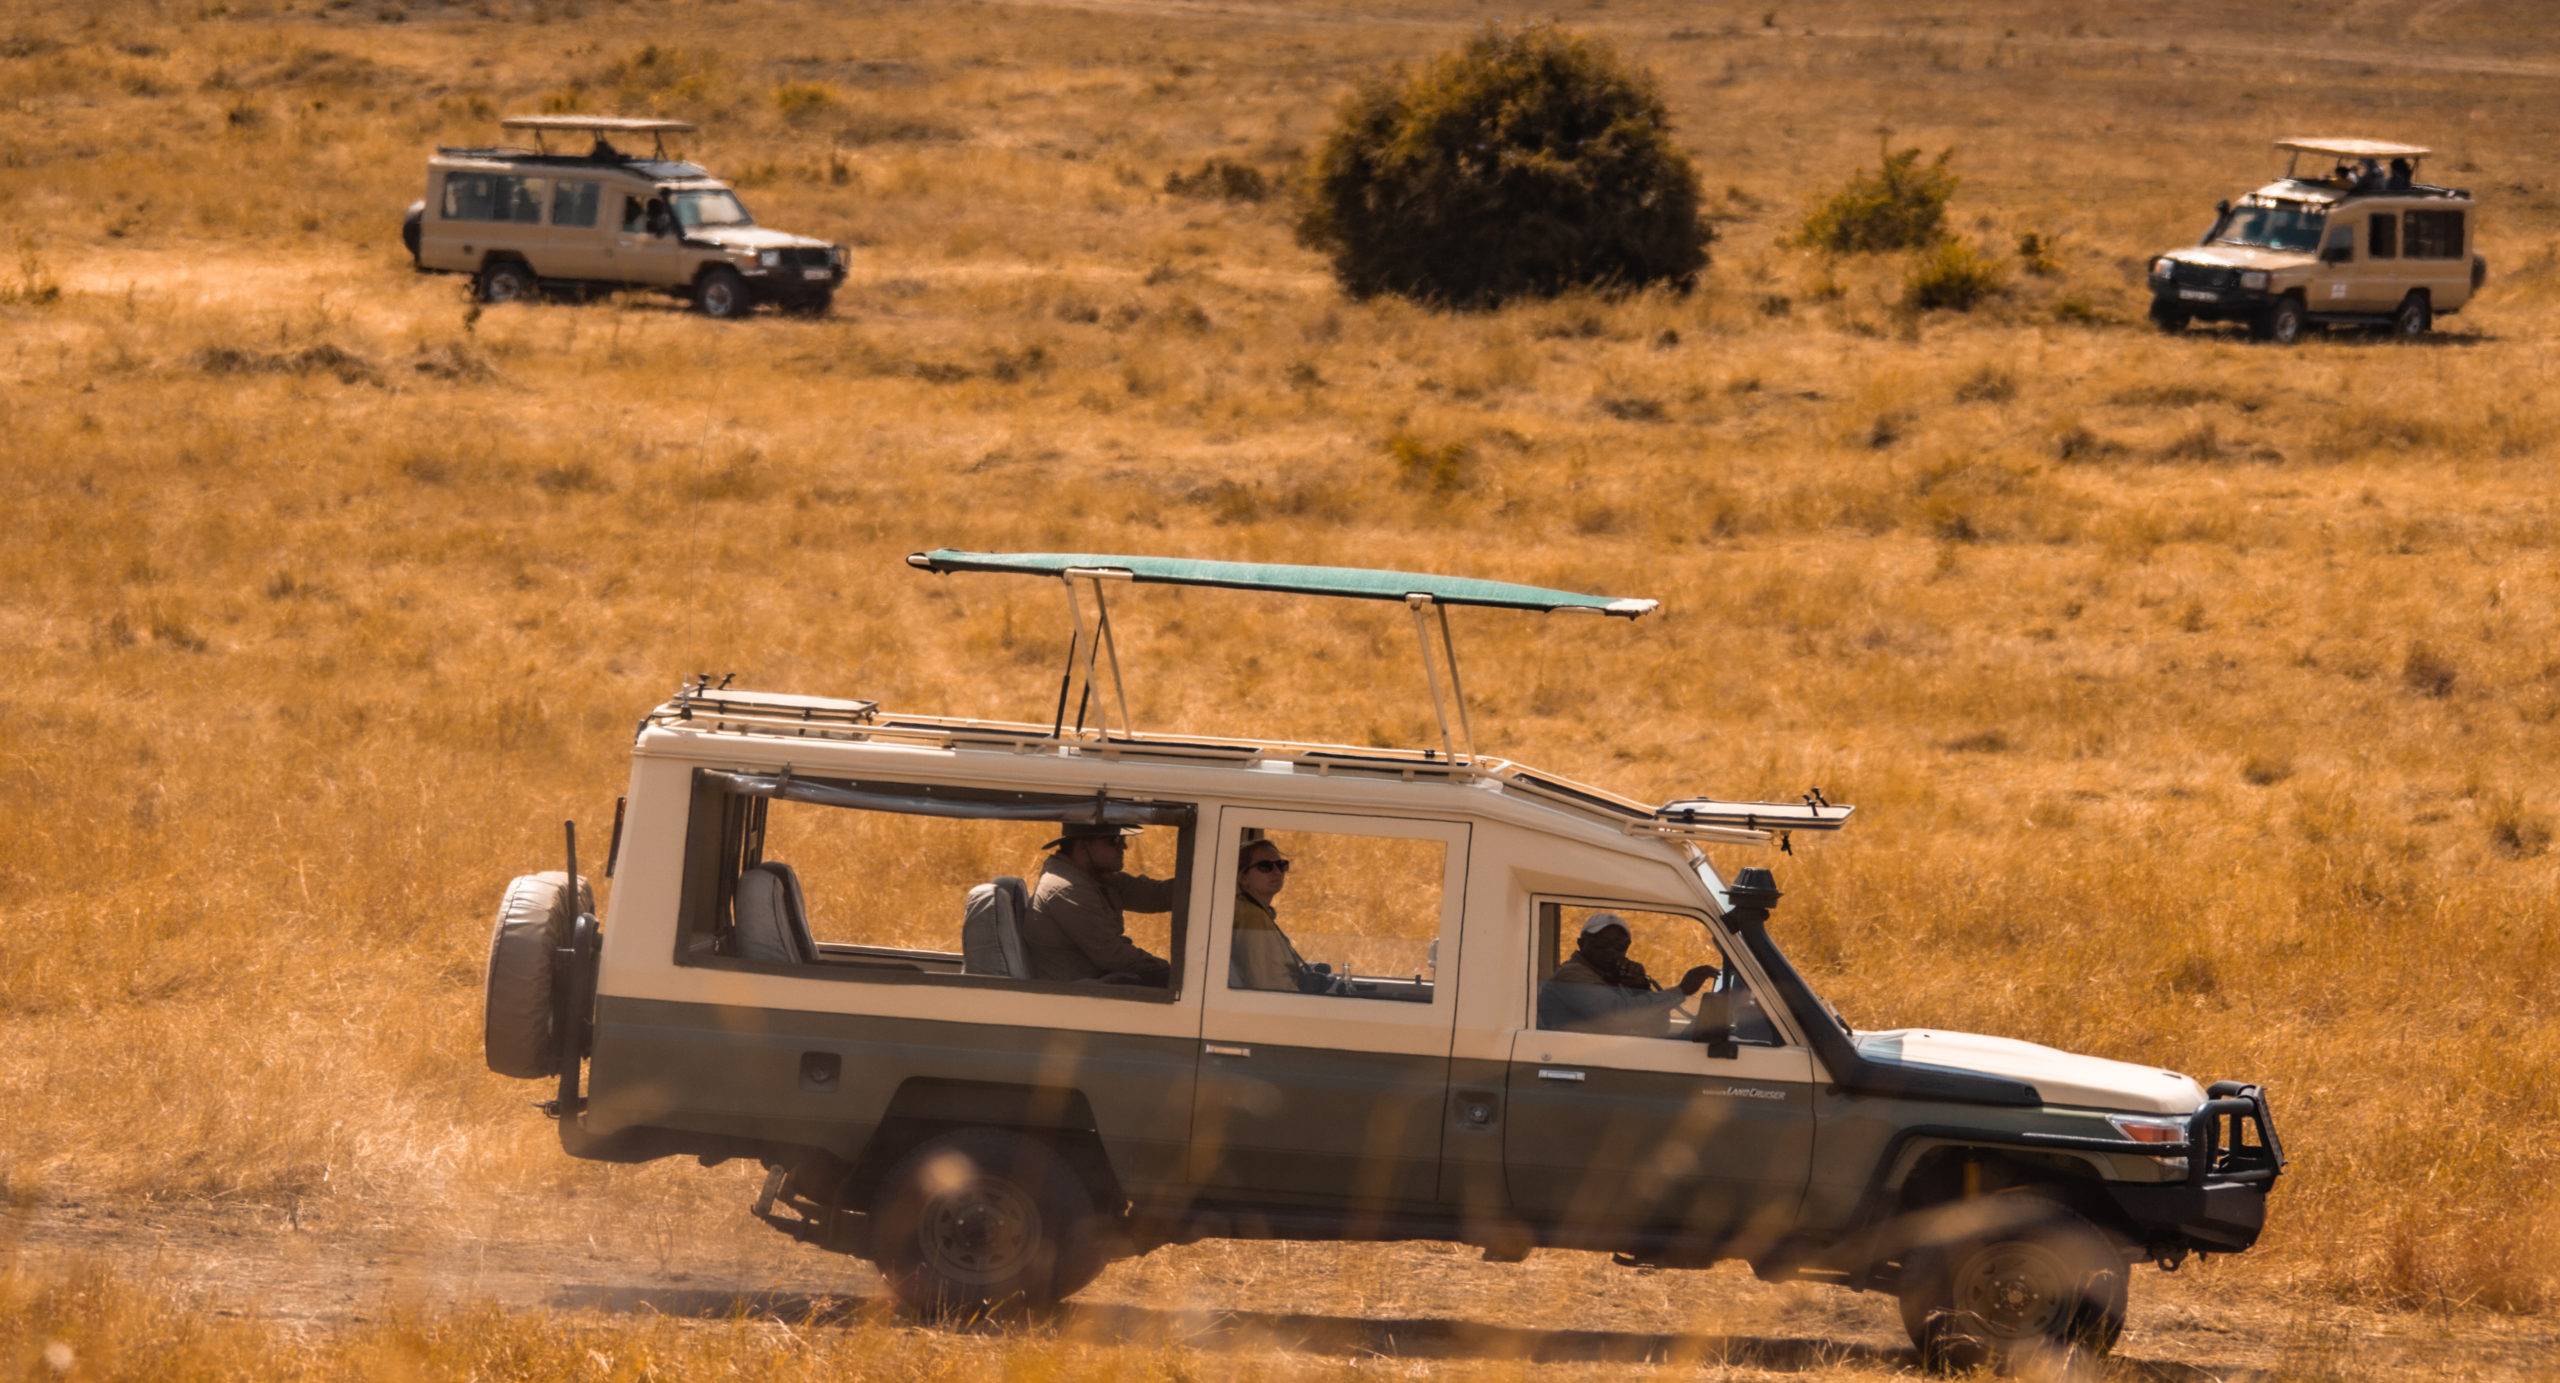 safari jeep on game drive